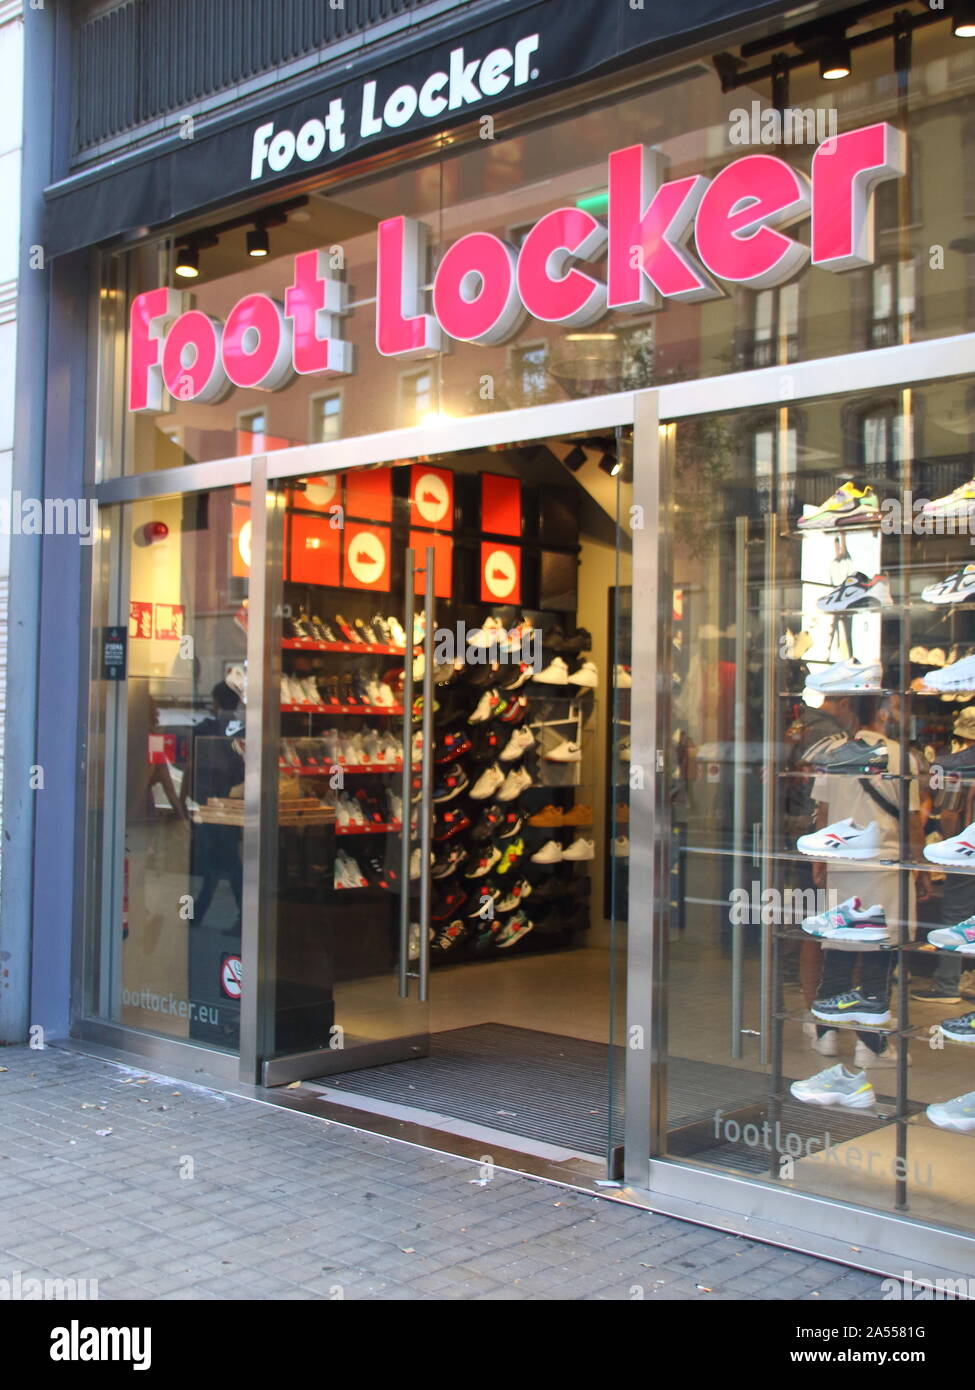 Foot Locker store seen in Barcelona. Stock Photo